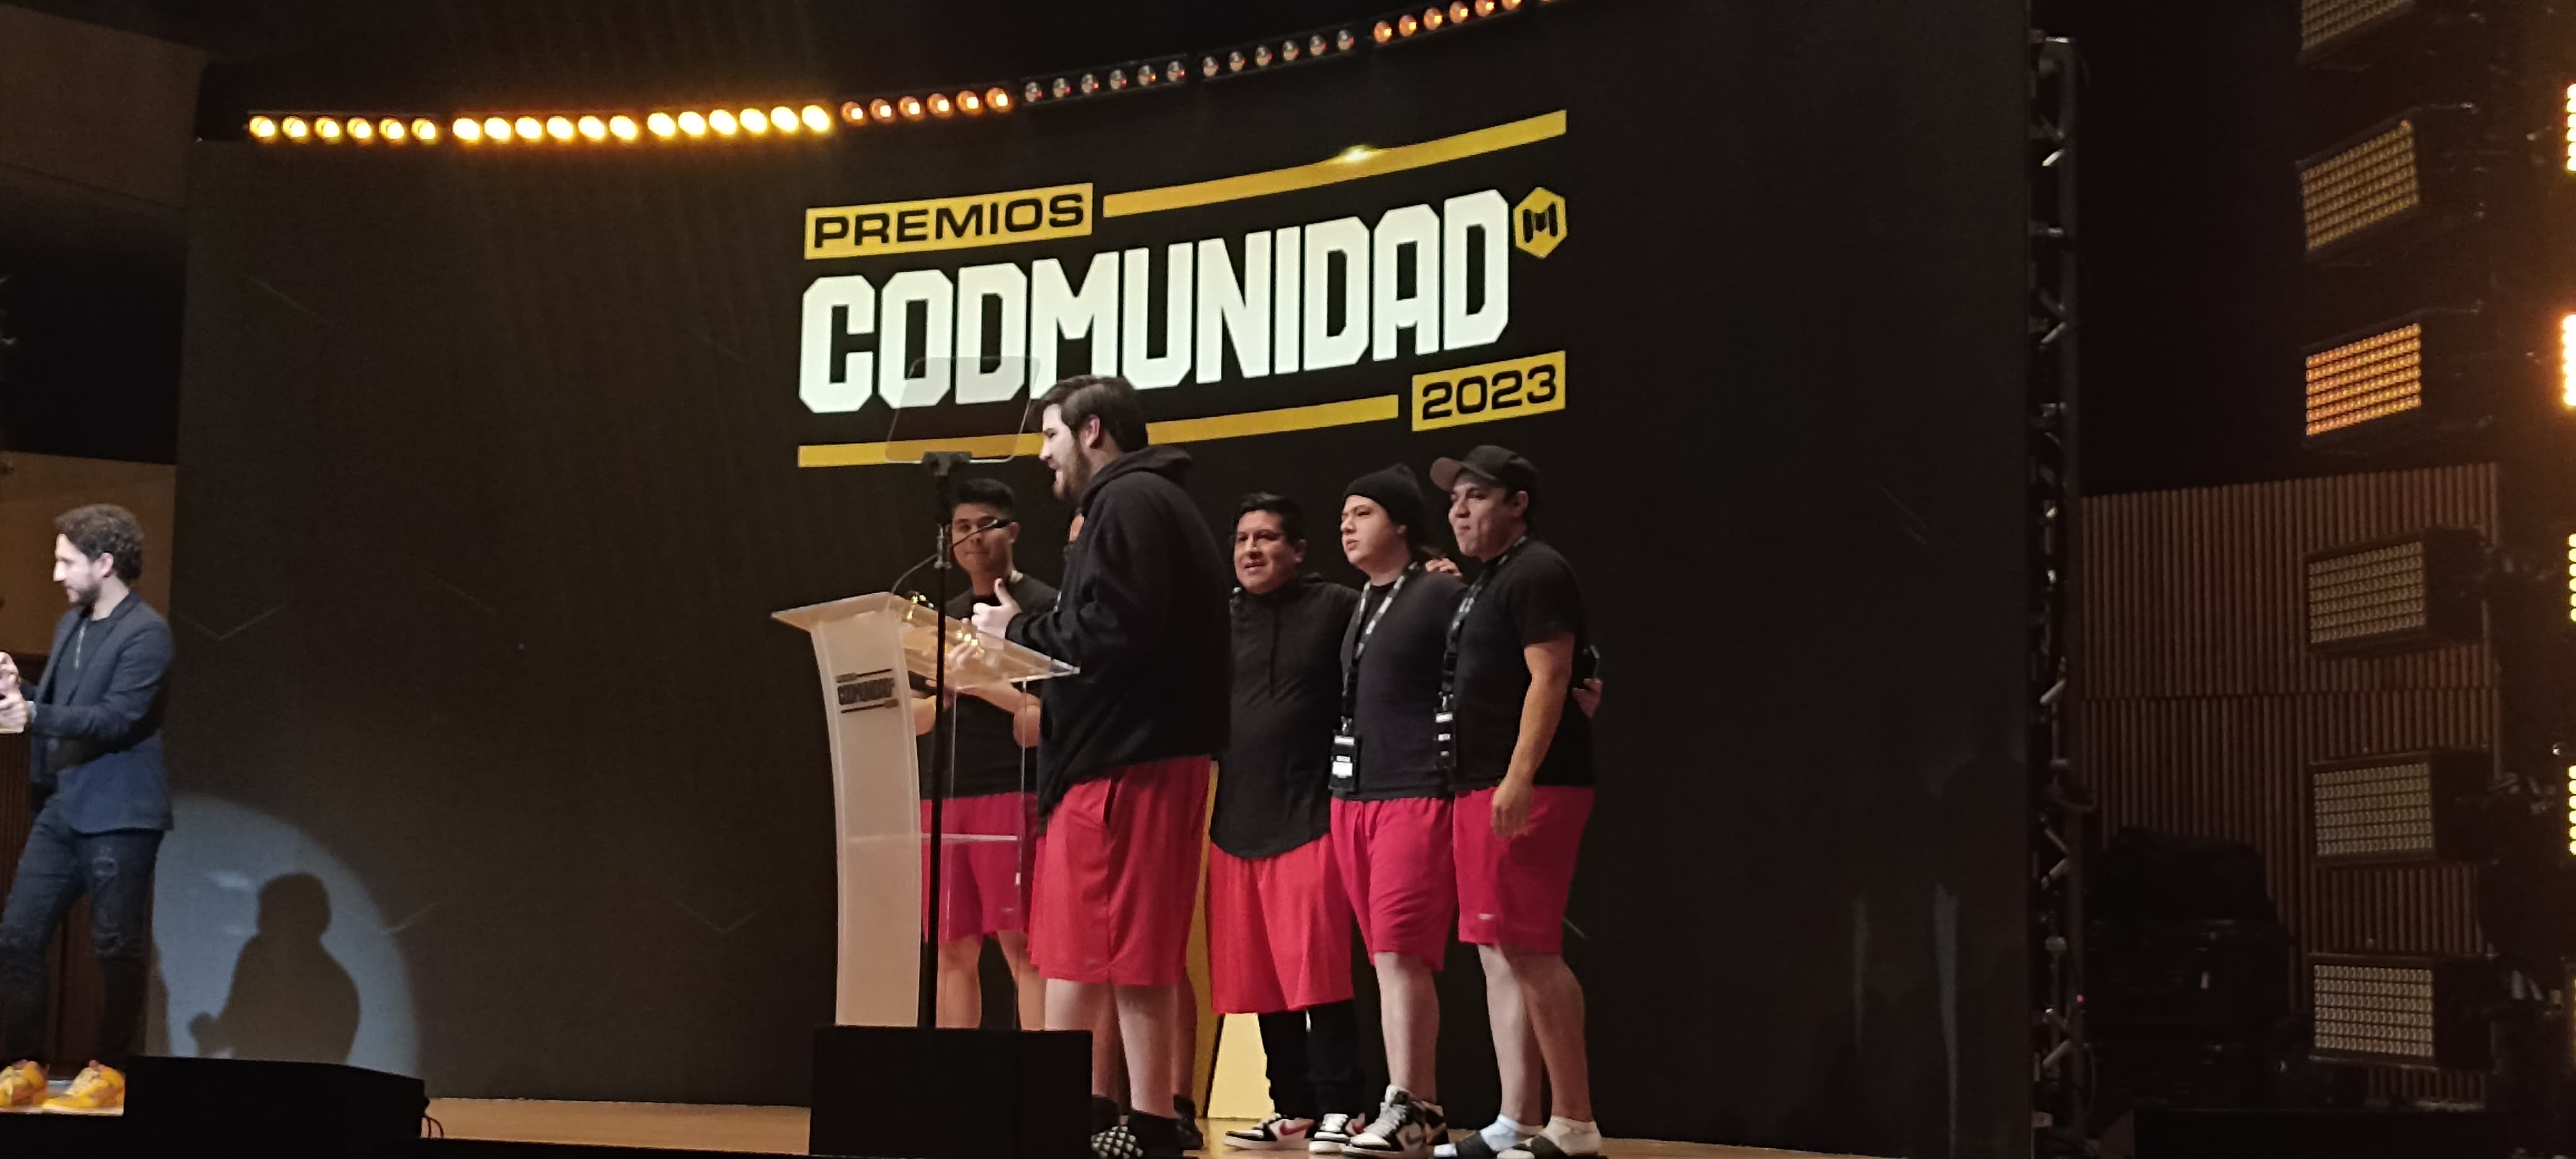 Premios CODMUNIDAD 2023 en Ciudad de México 6